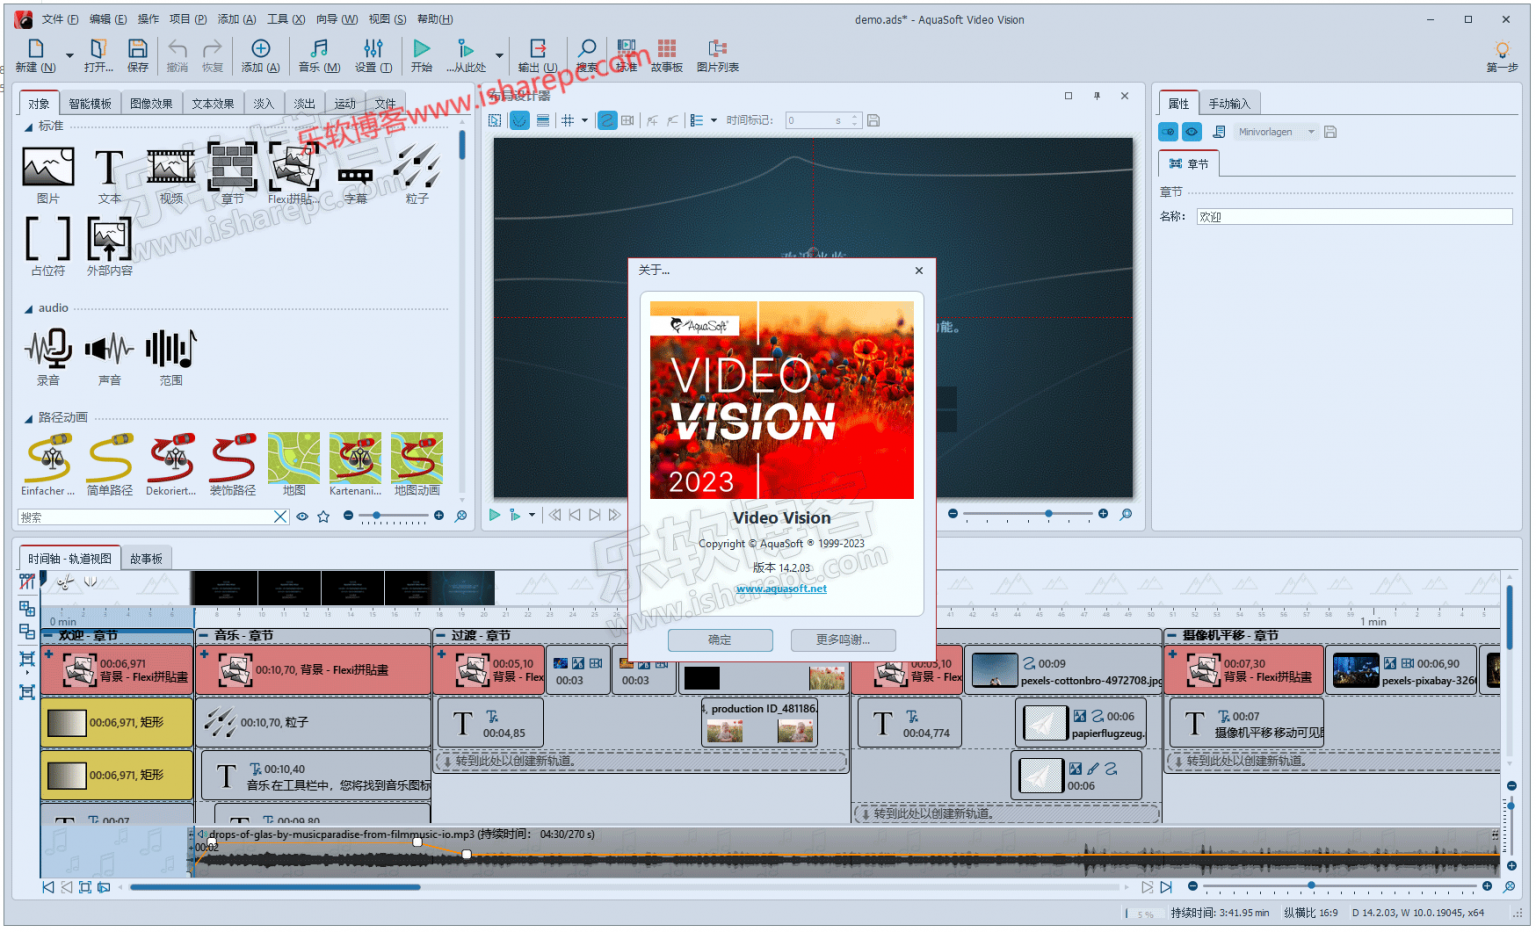 instal AquaSoft Video Vision 14.2.09 free